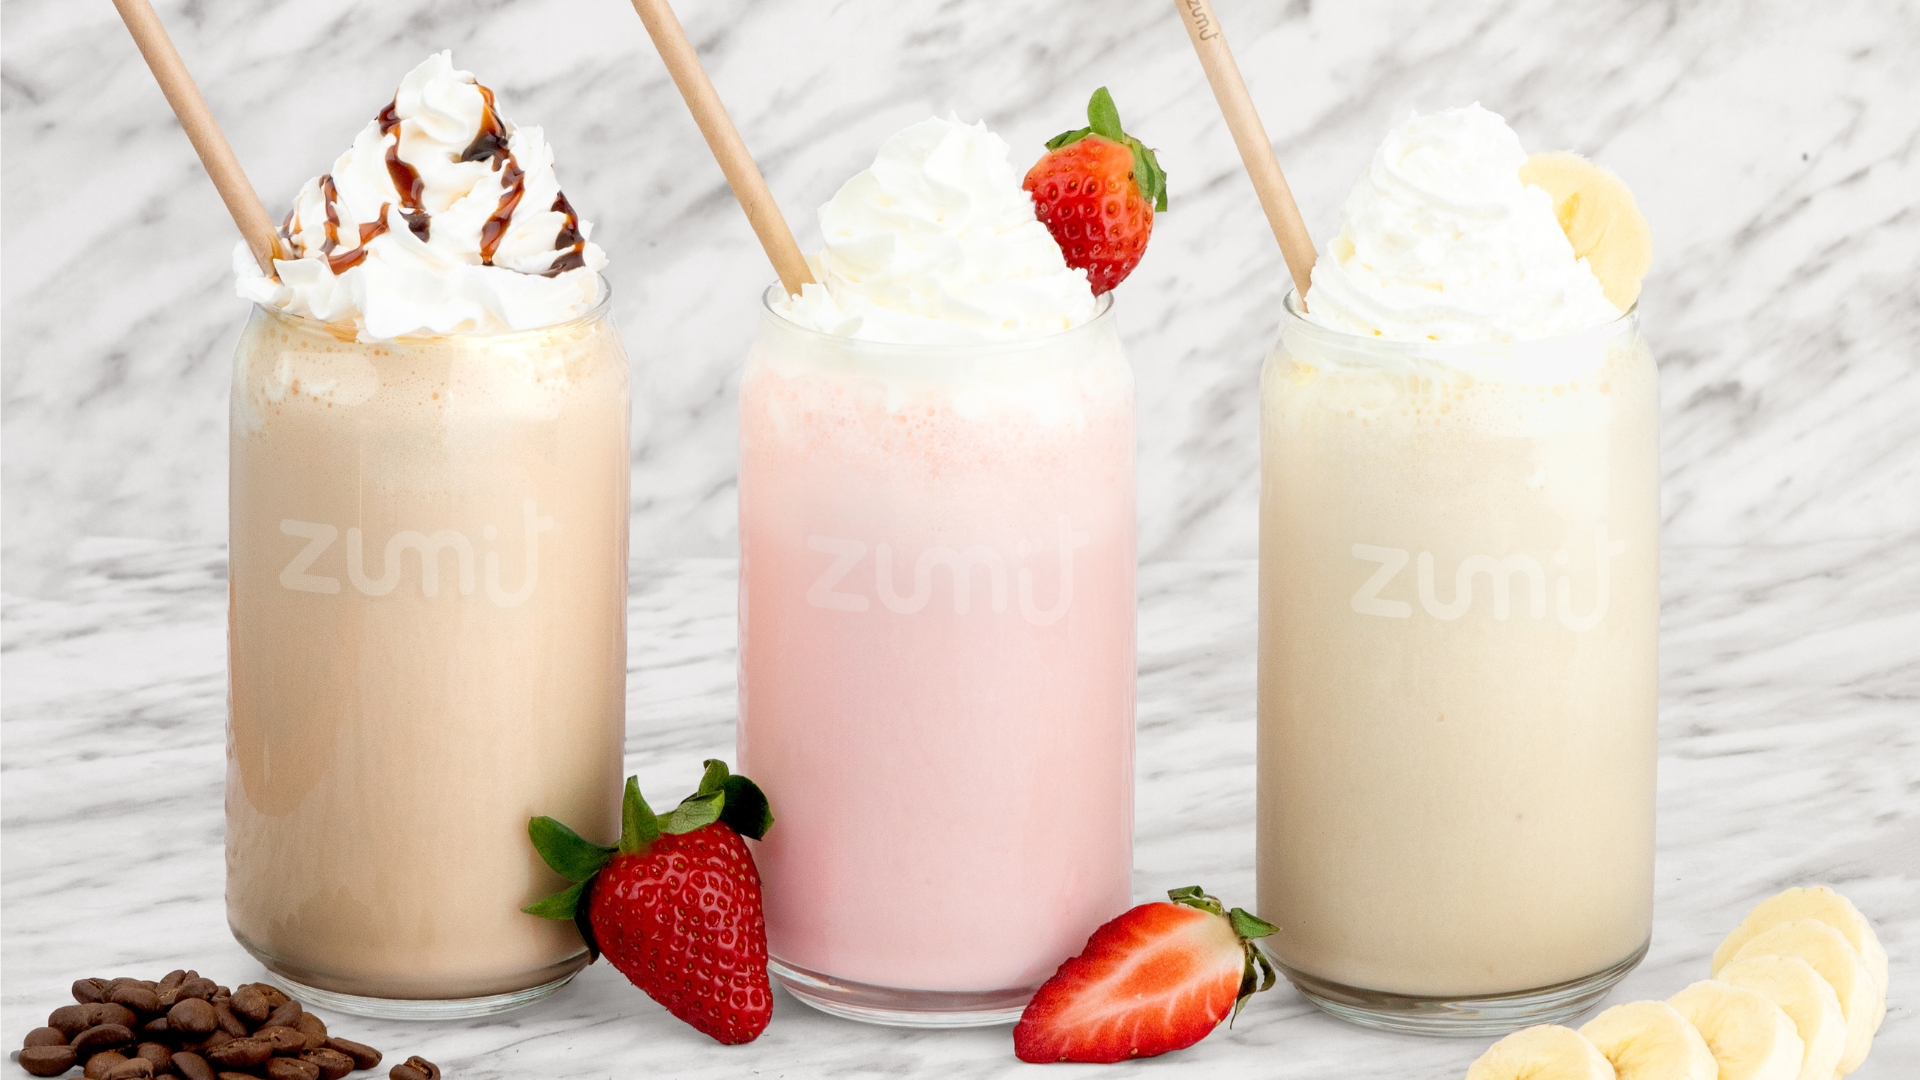 Descubre los frappés de Zumit: Mocha, Salted Caramel, Cookies & Cream. Calidad superior y sabores únicos para tu negocio.